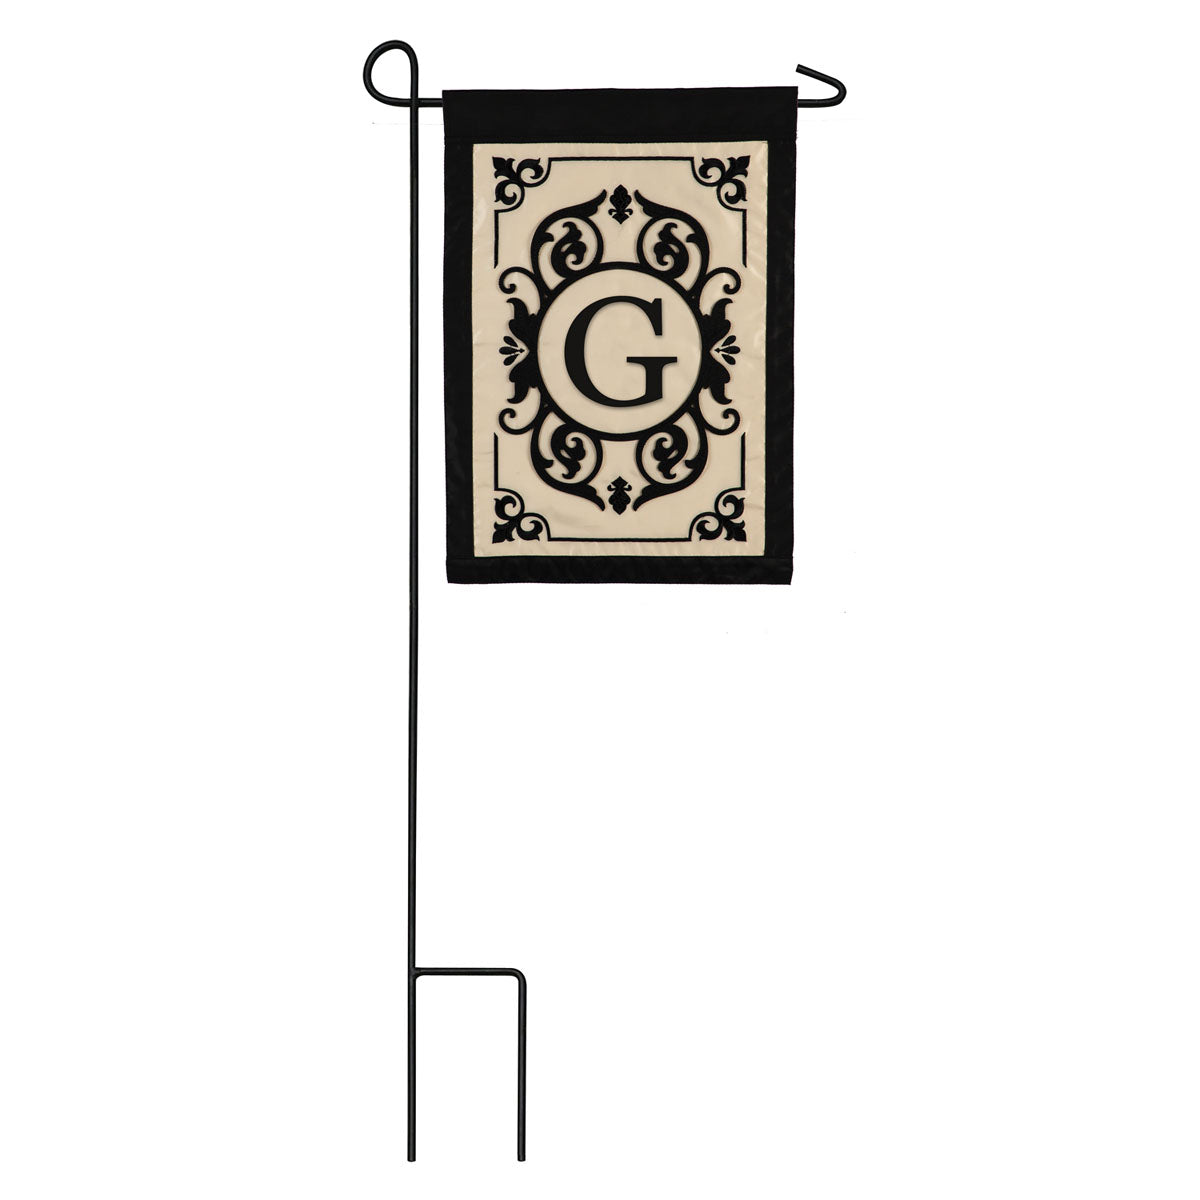 Cambridge Monogram Garden Applique Flag, "G"